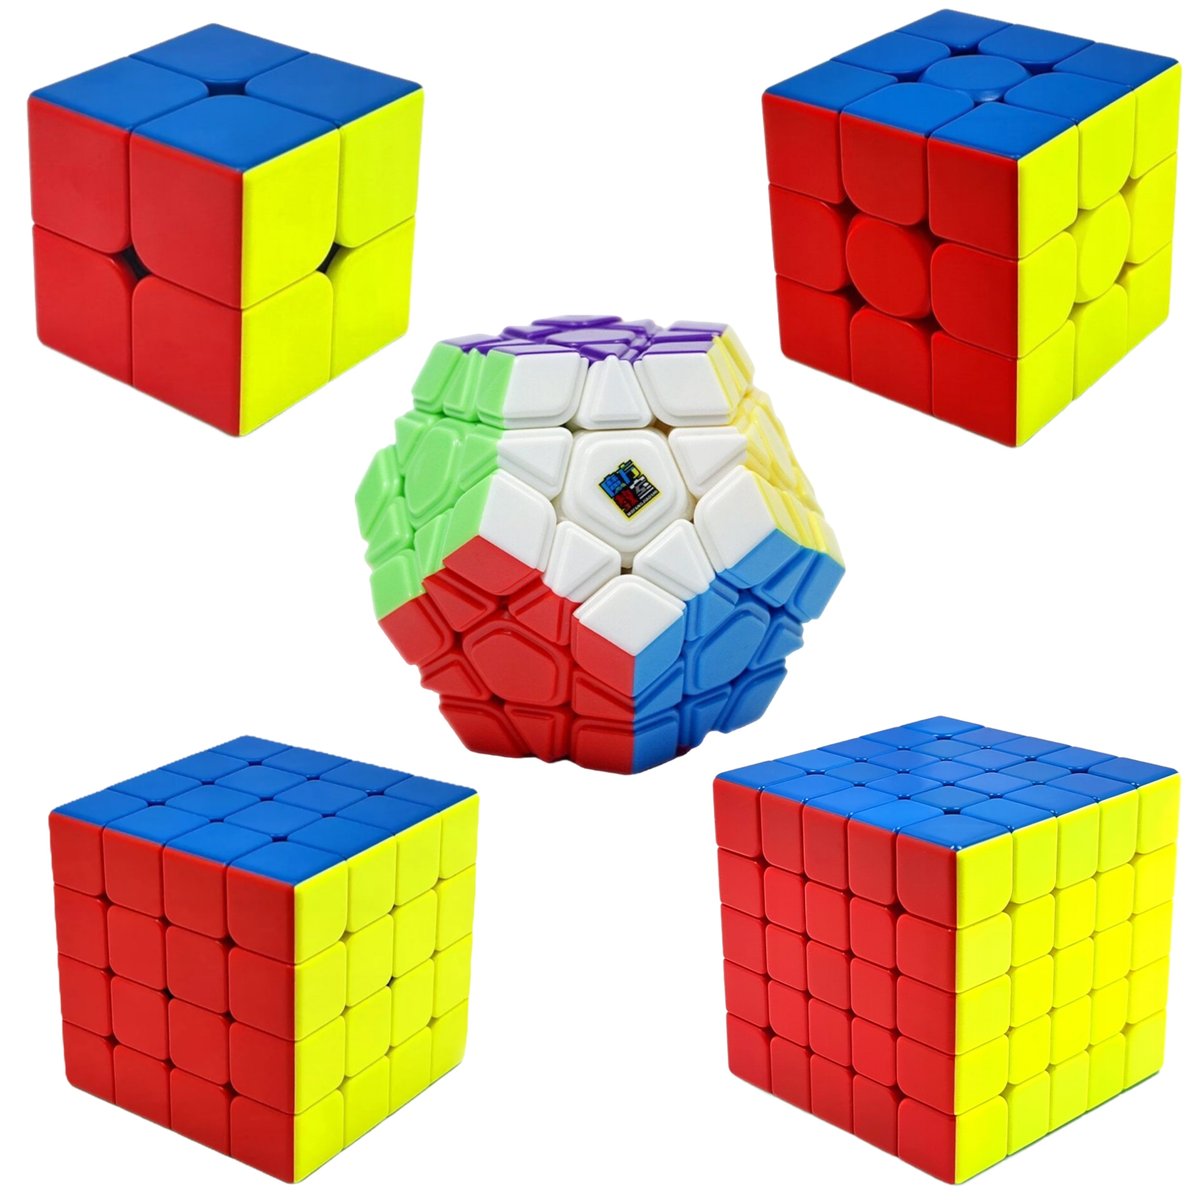 Zestaw Kostka Rubika 2x2 + 3x3 + 4x4 + 5x5 + Megaminx MoYu